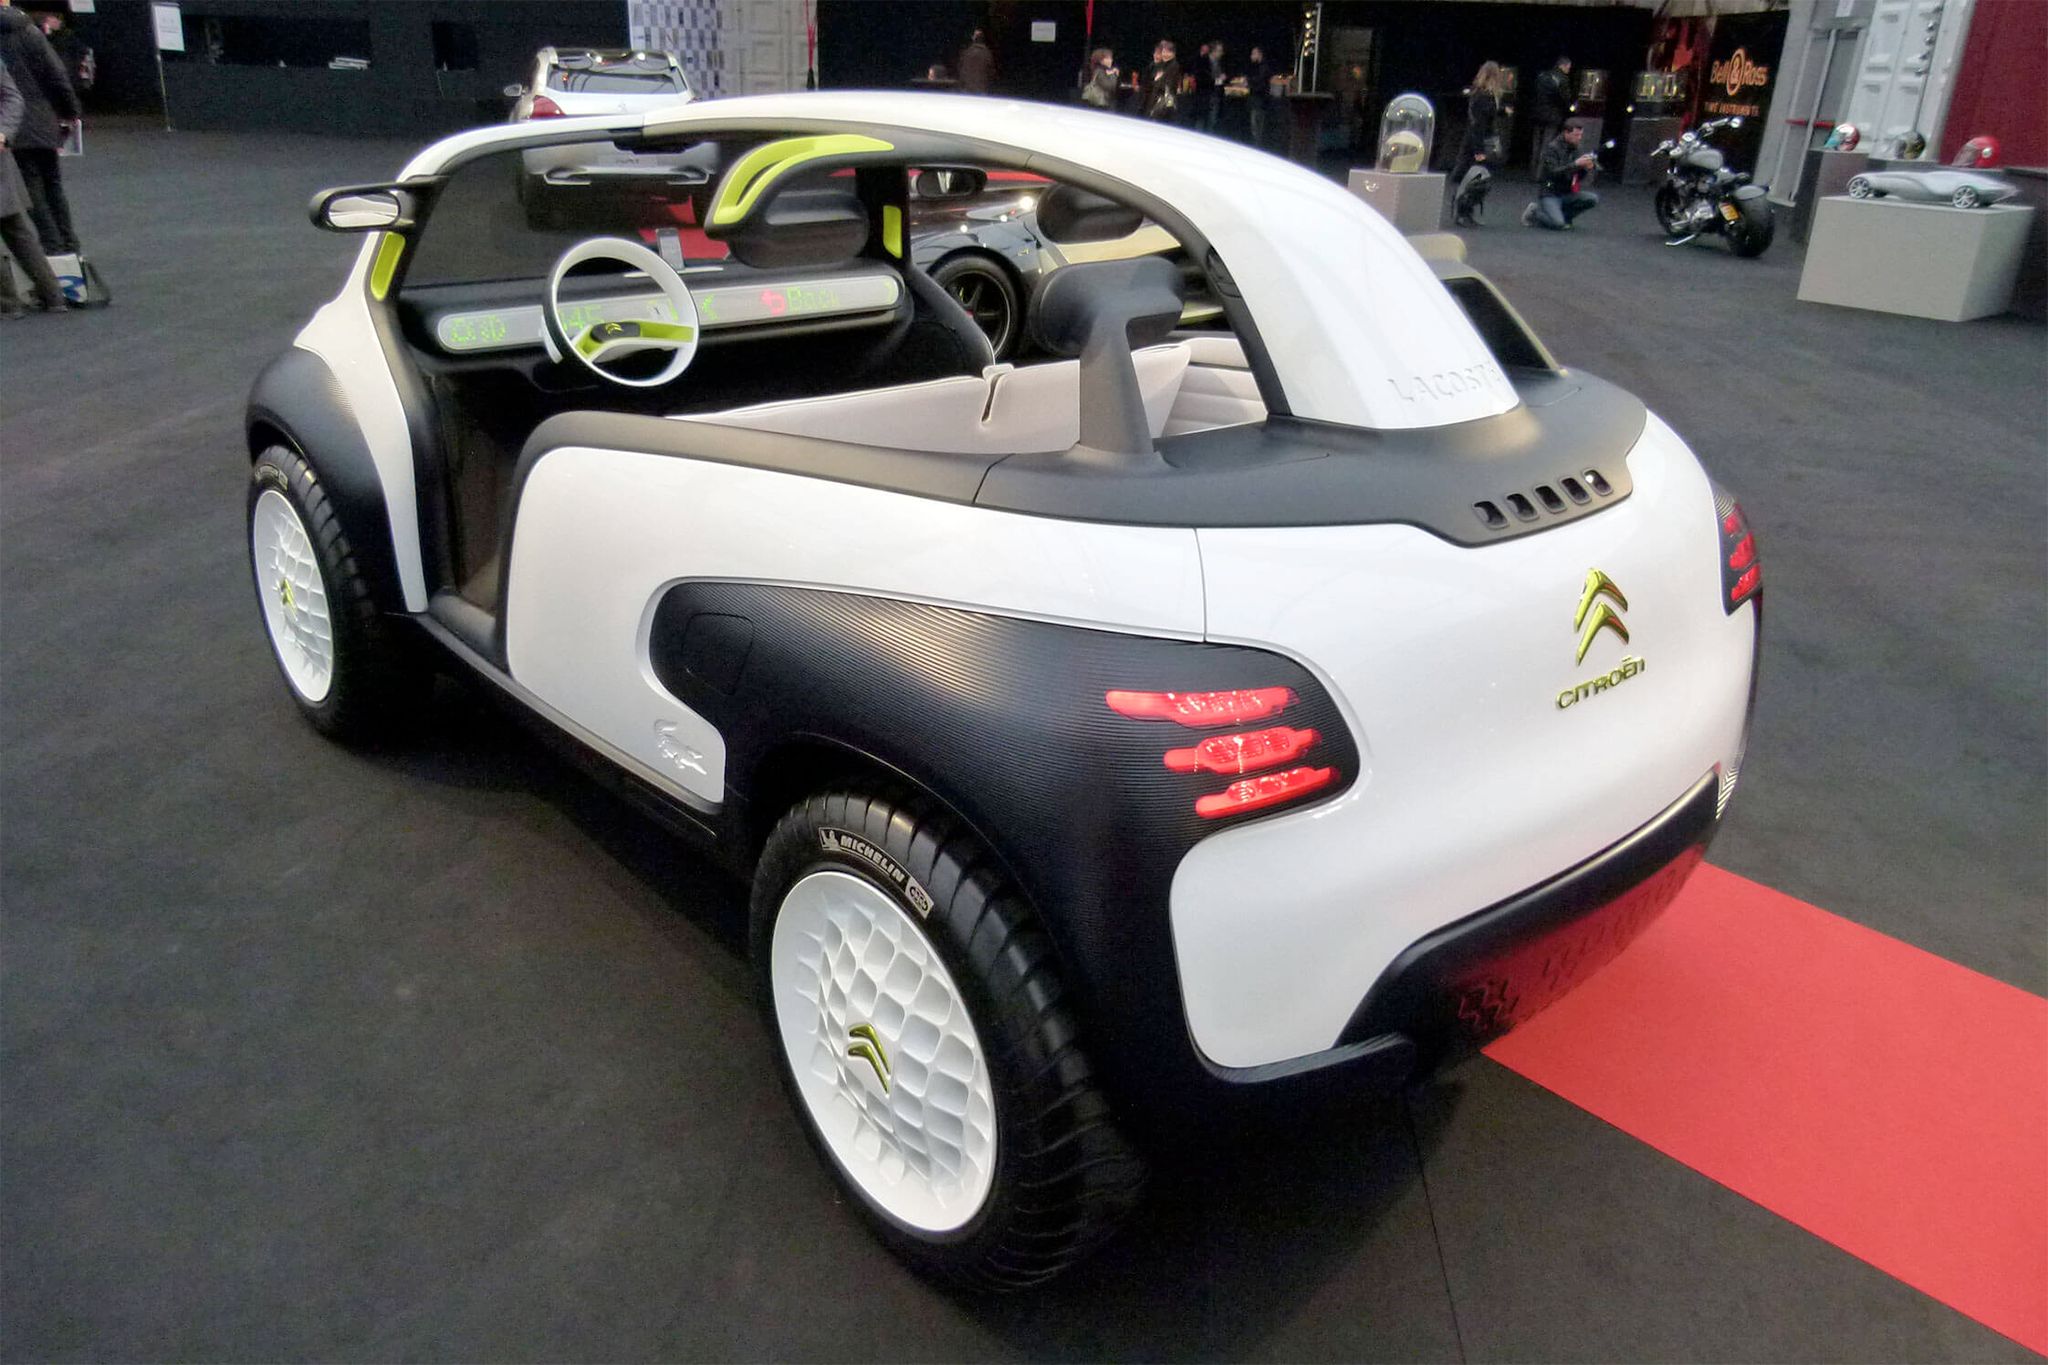 Lacoste / Citroën Lab - 2010